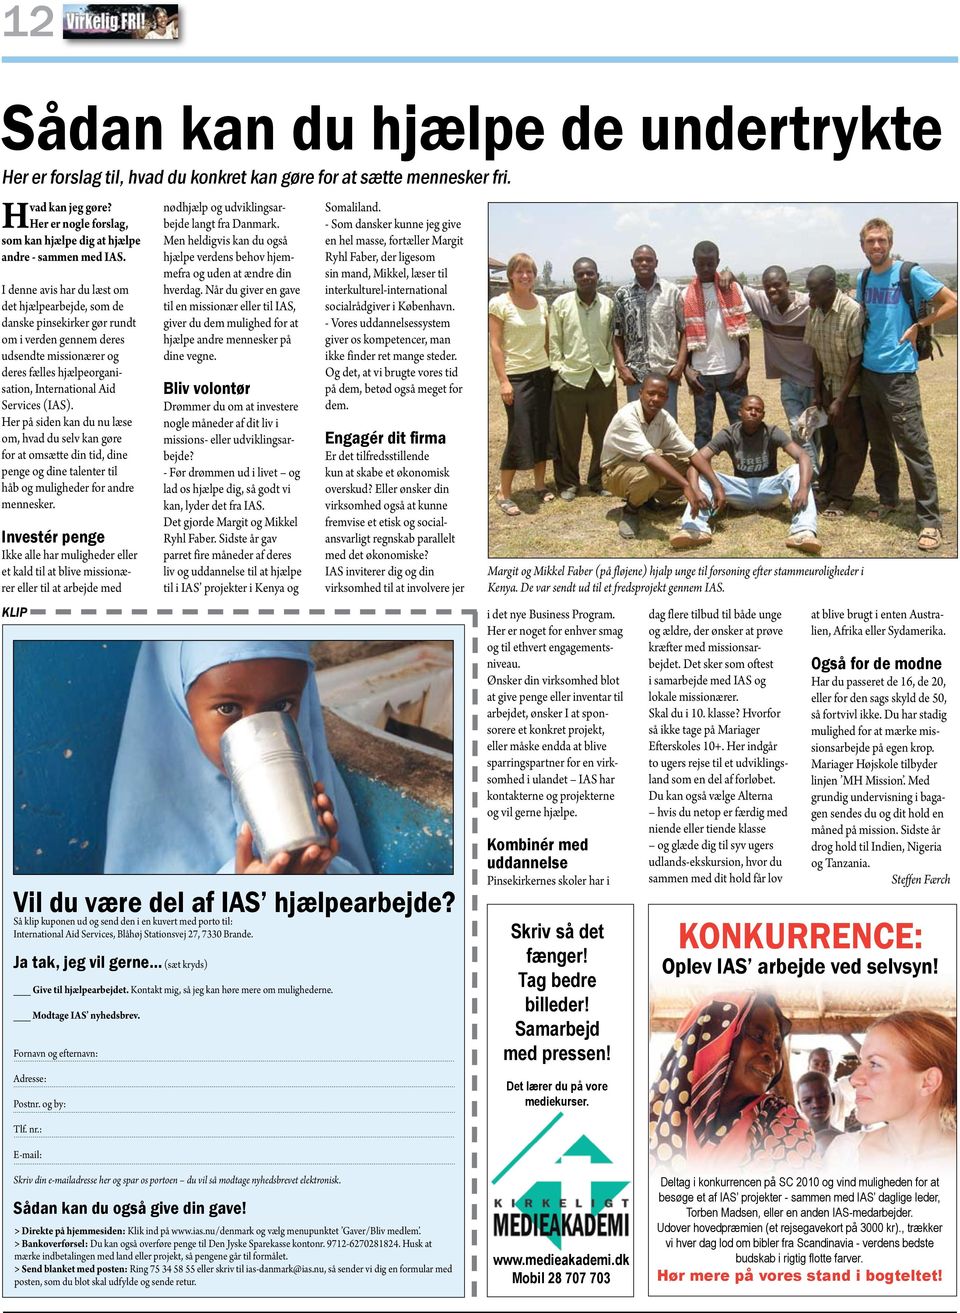 I denne avis har du læst om det hjælpearbejde, som de danske pinsekirker gør rundt om i verden gennem deres udsendte missionærer og deres fælles hjælpeorganisation, International Aid Services (IAS).